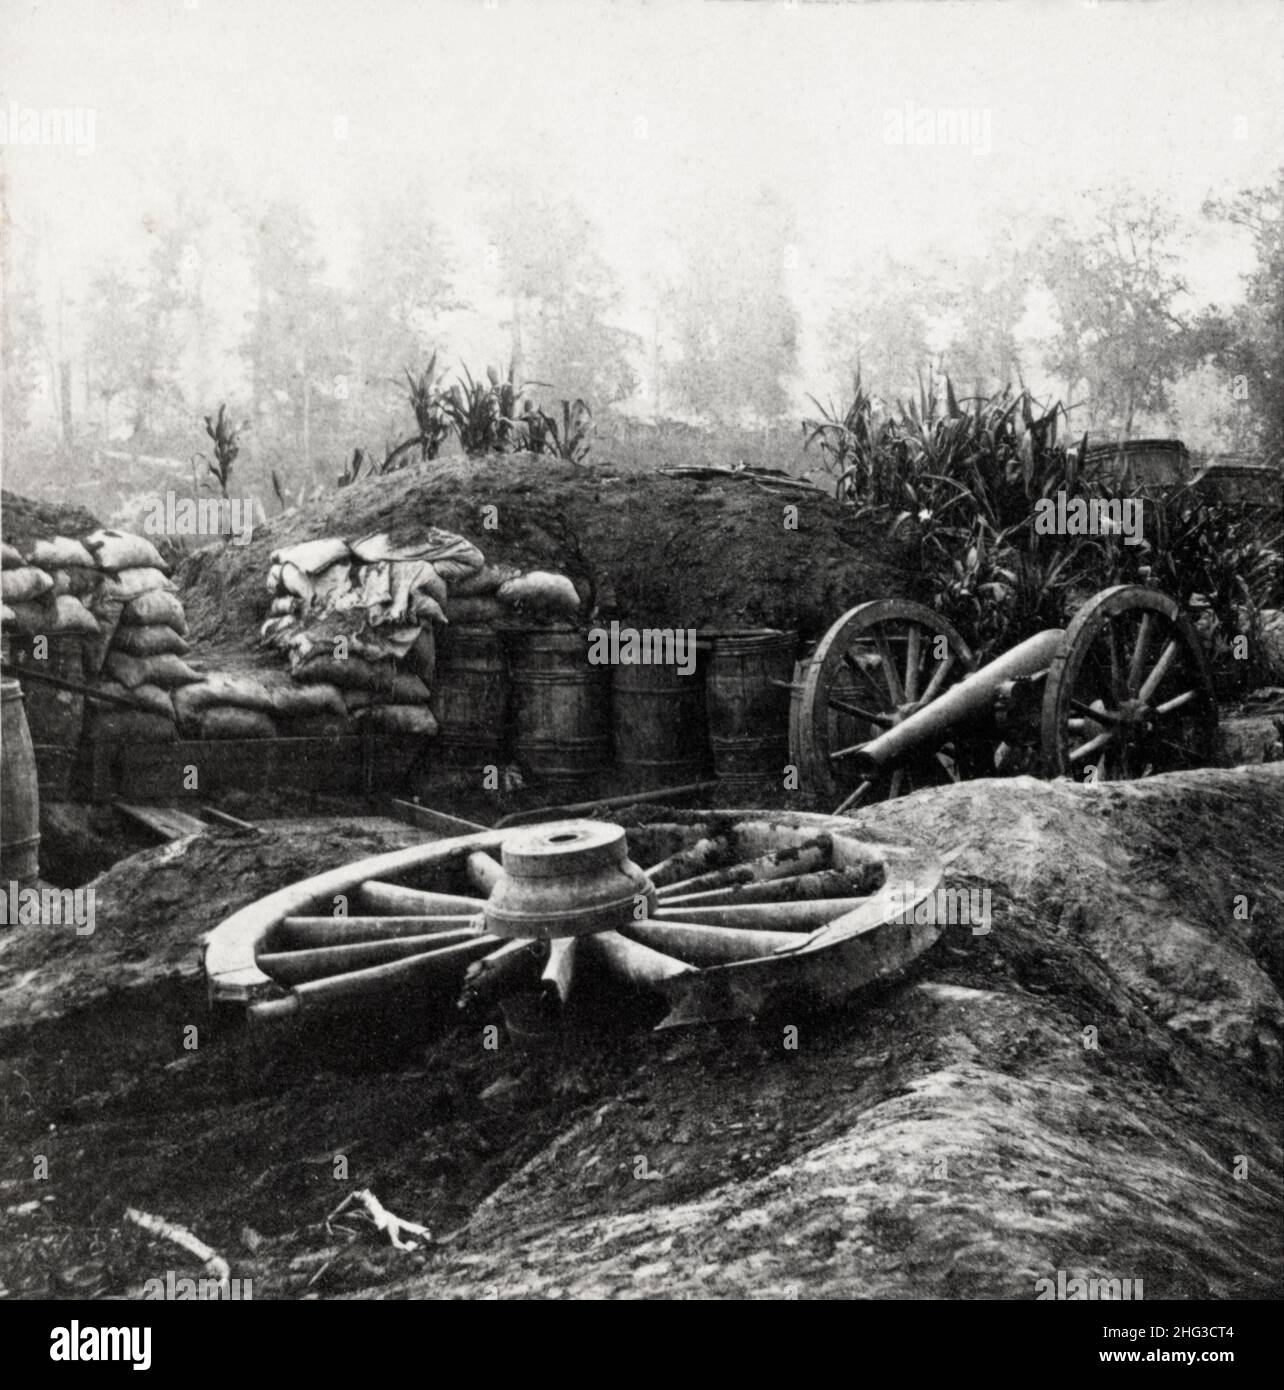 Amerikanischer Bürgerkrieg. 1861-1865 Geschütze und Befestigungsanlagen im Inneren von Port Hudson nach der Belagerung im Jahr 1863. Stockfoto